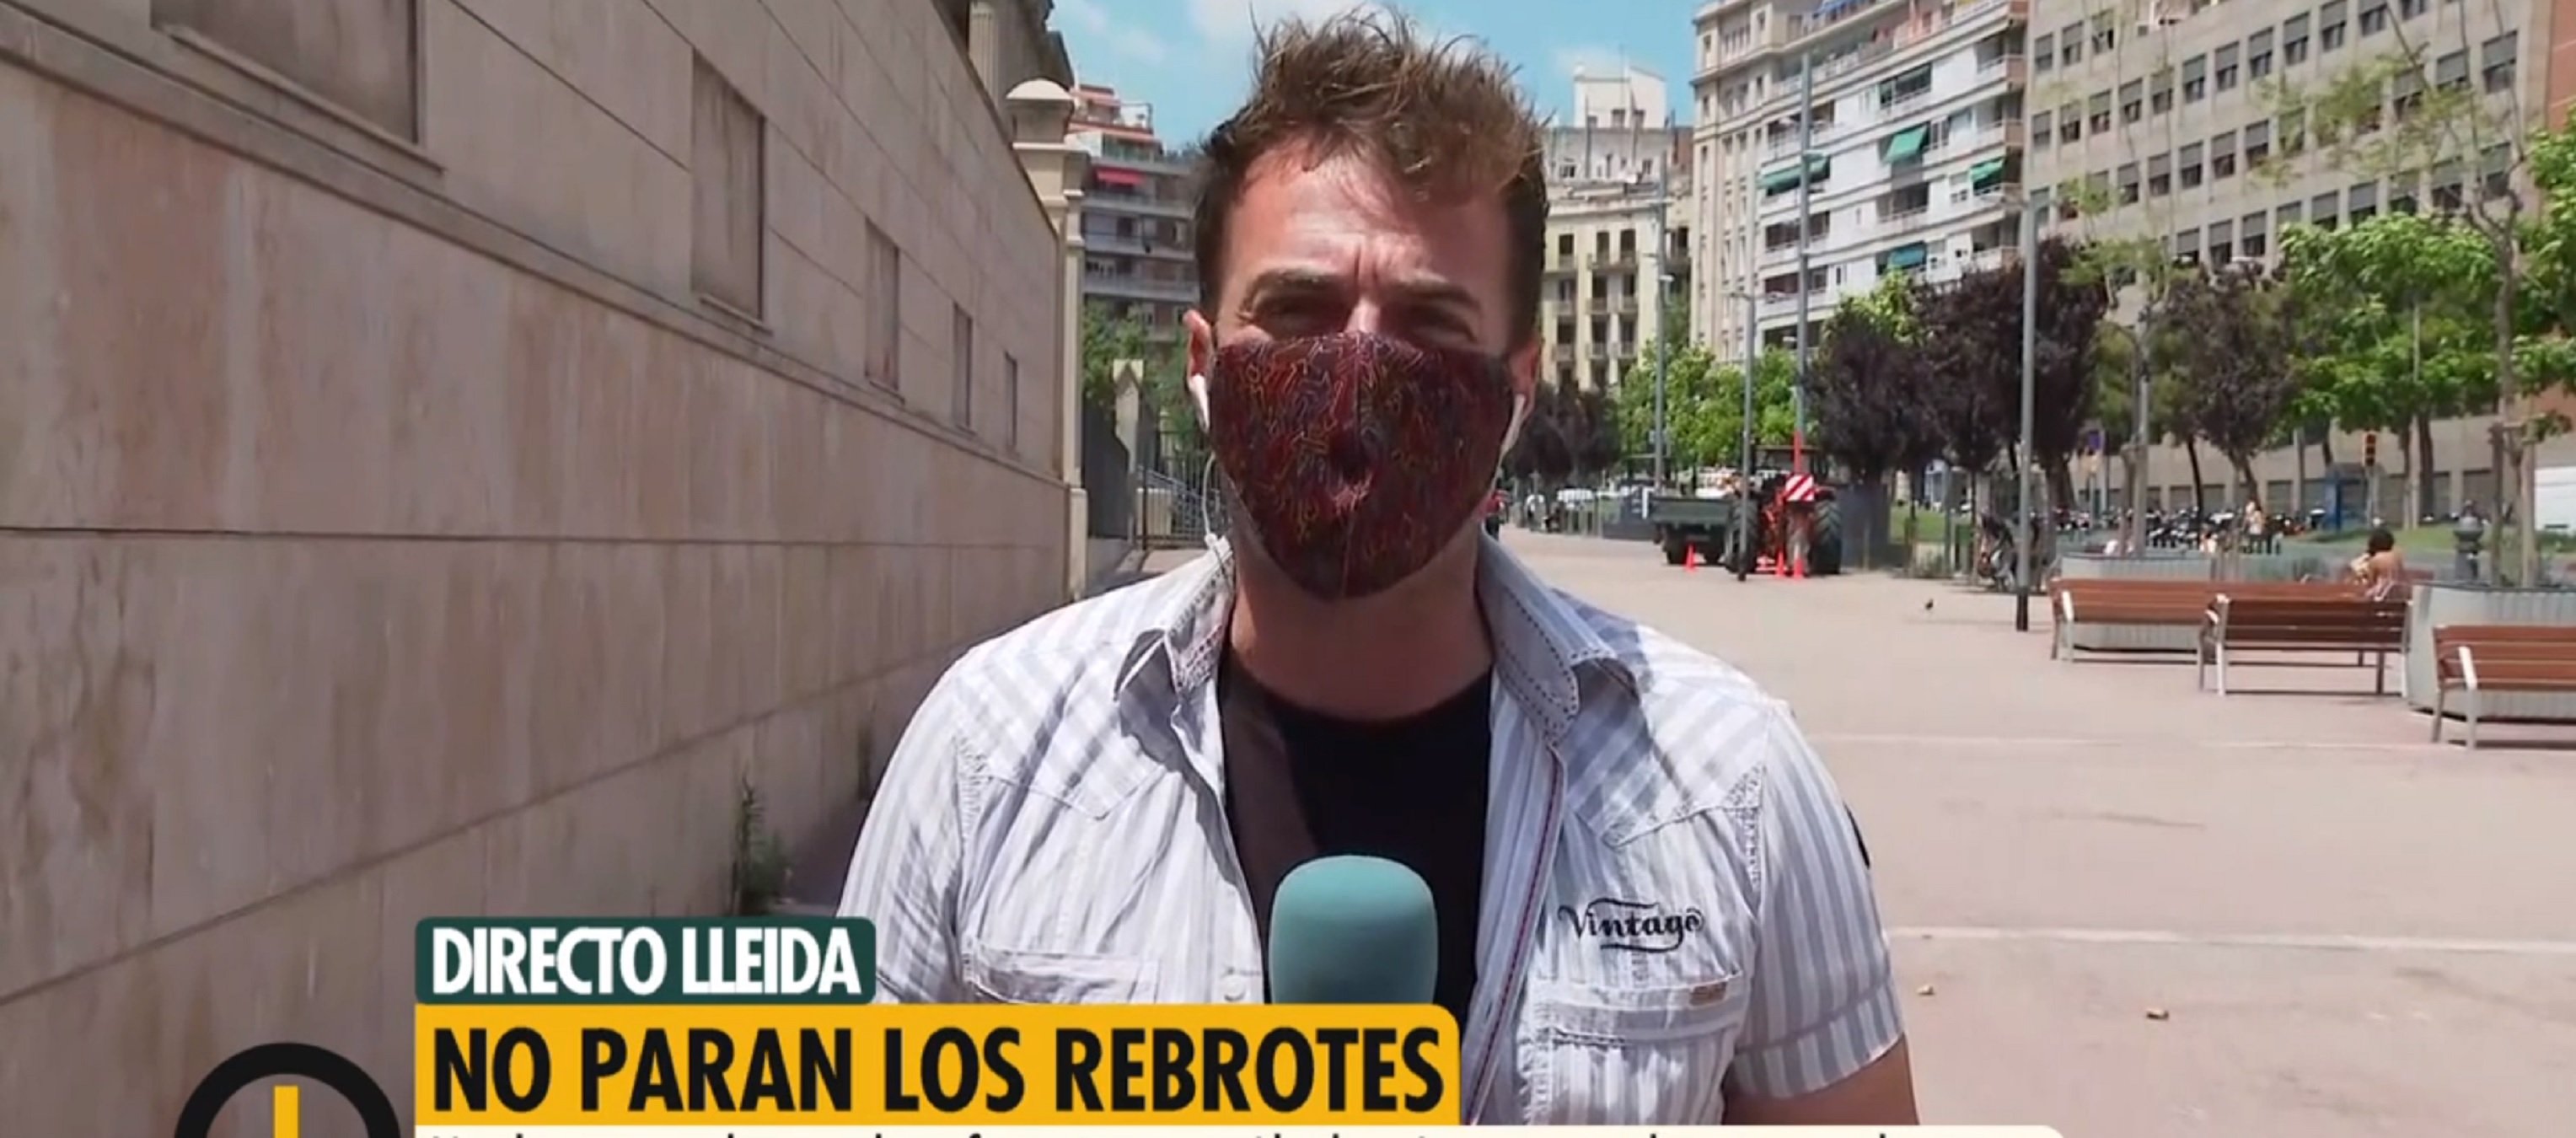 Així manipula Telecinco: "Directo Lleida" i amaguen que és el c/Casanova de BCN